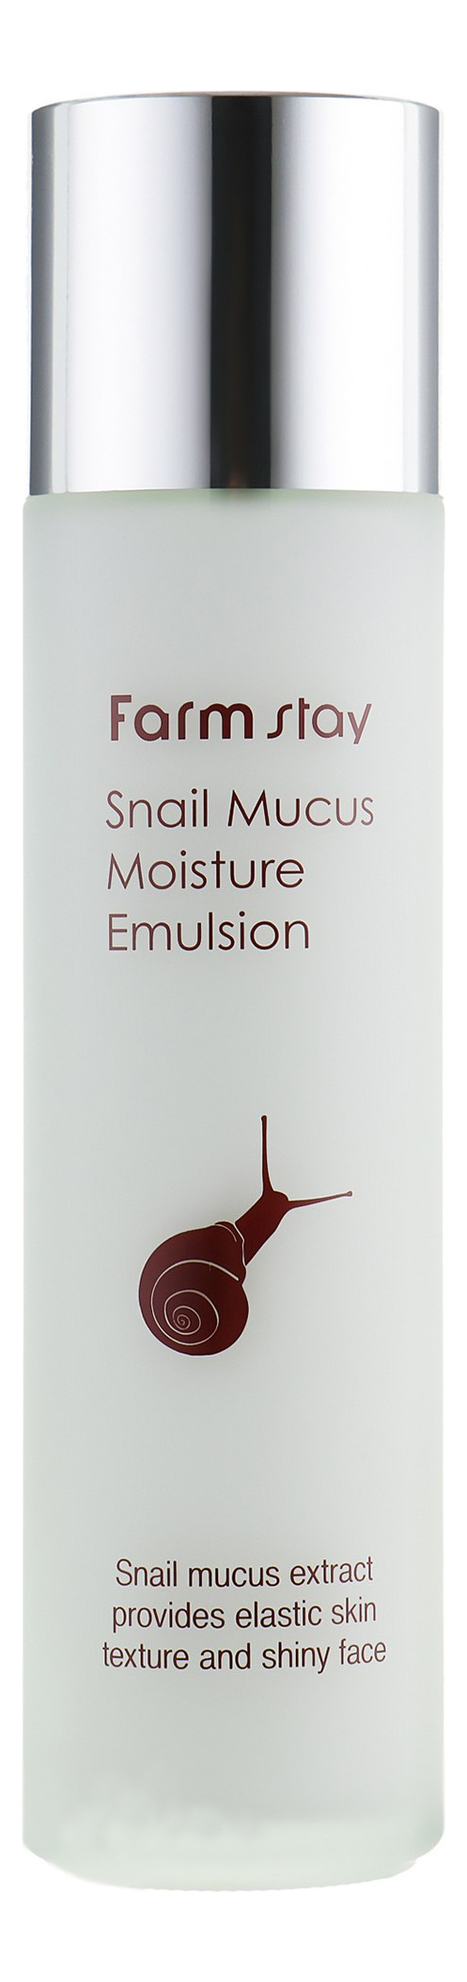 Увлажняющая эмульсия для лица с муцином улитки Snail Mucus Moisture Emulsion 150мл эмульсия увлажняющая с экстрактом улитки farm stay snail mucus moisture emulsion 150 мл